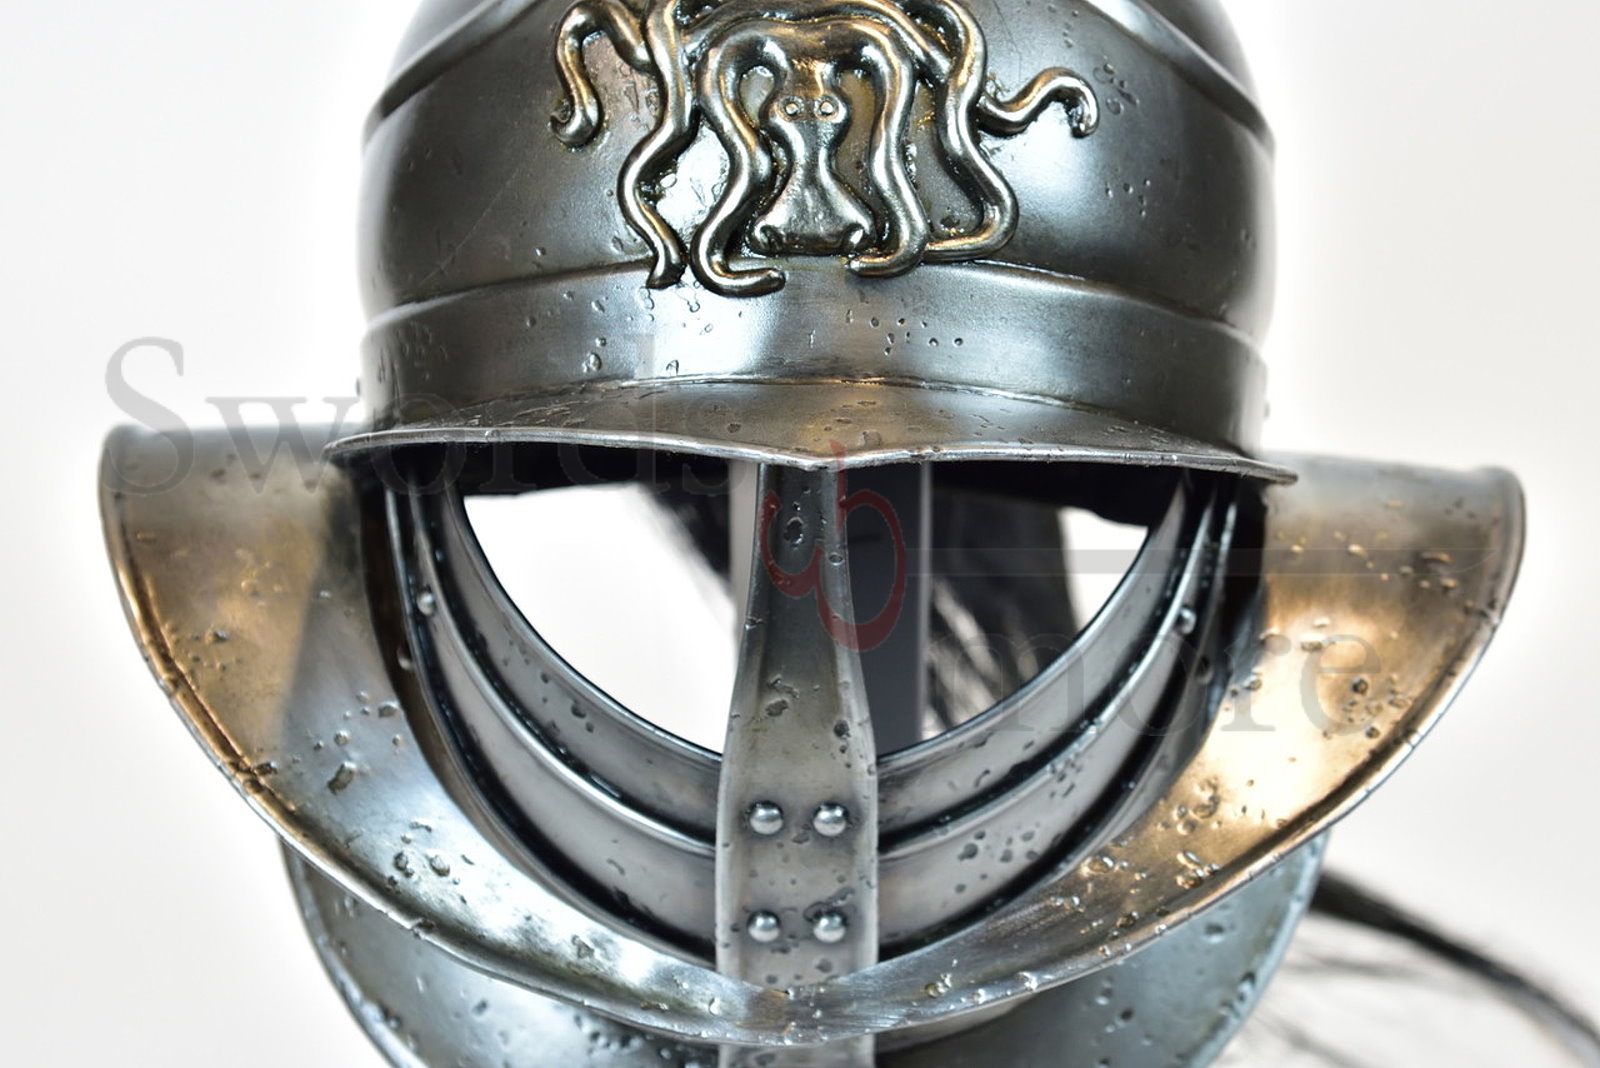 Spartacus Helmet